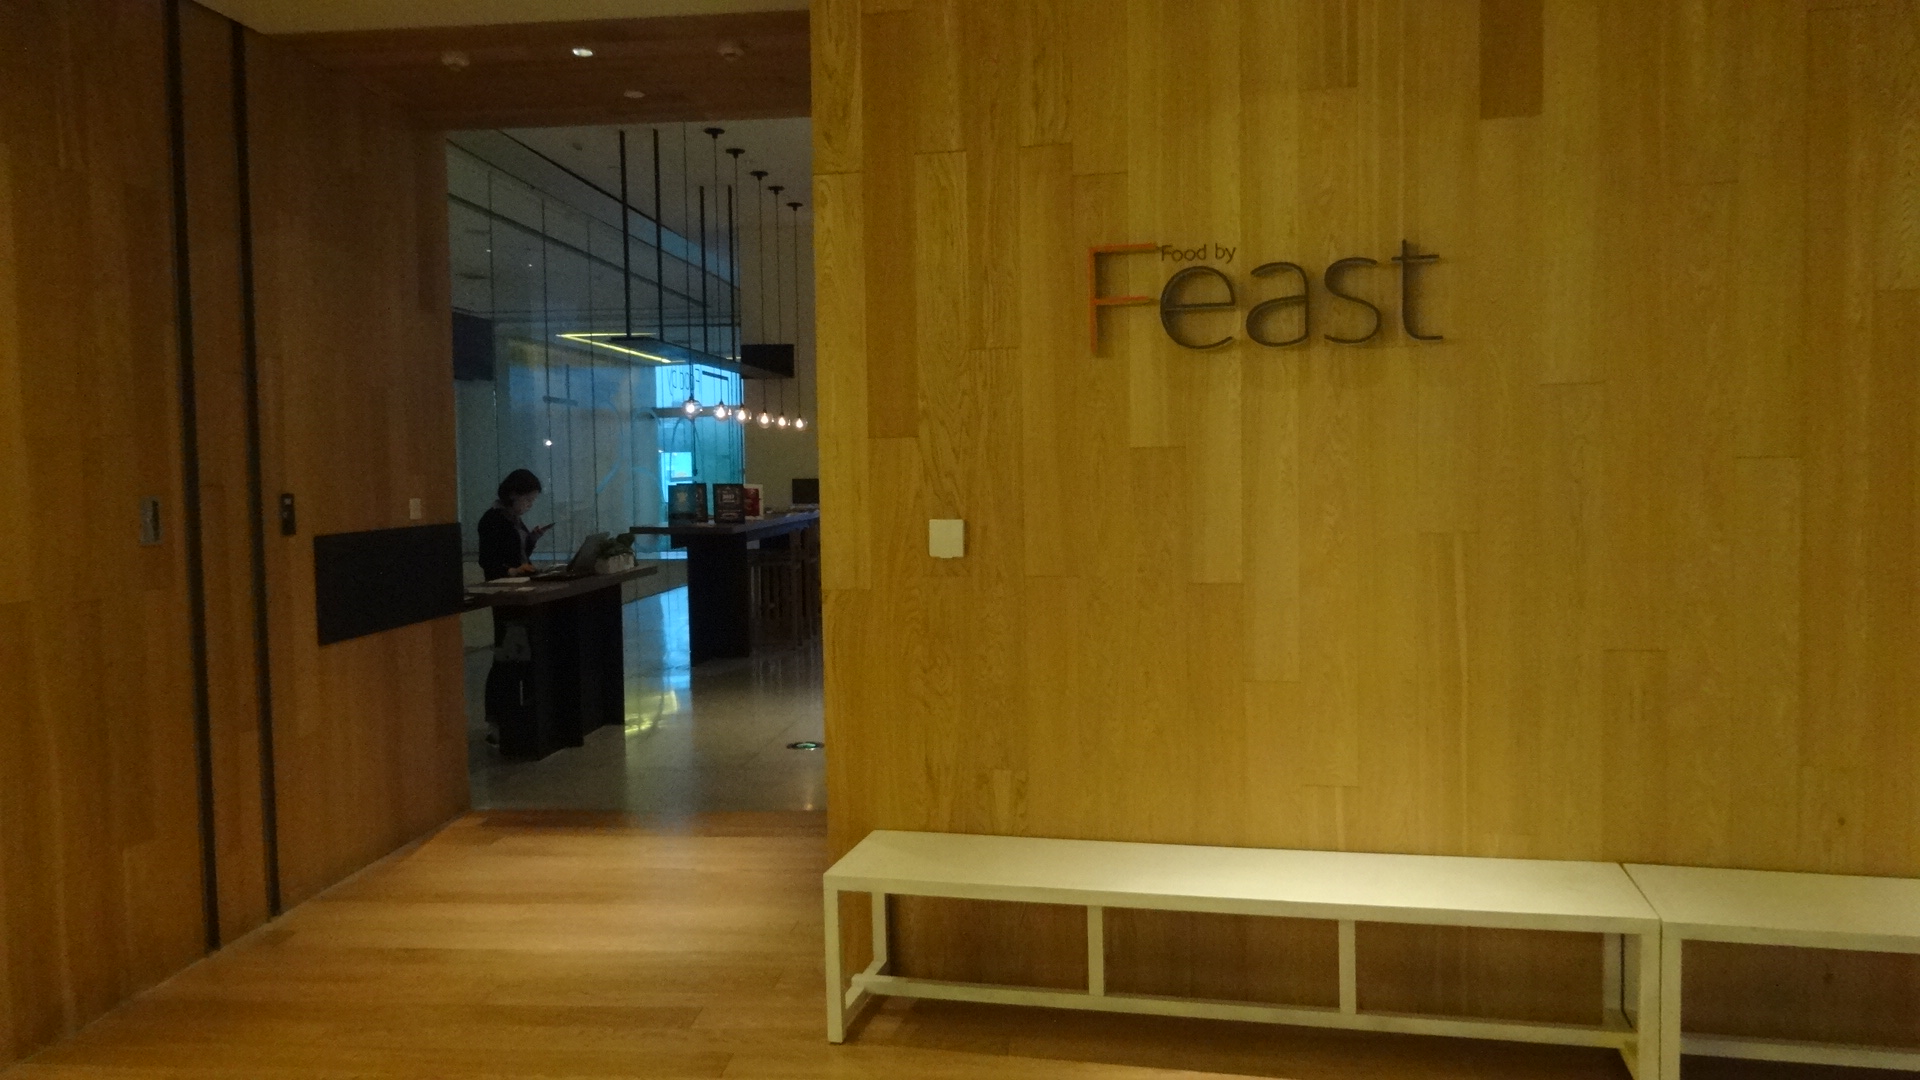 Feast Food by EAST